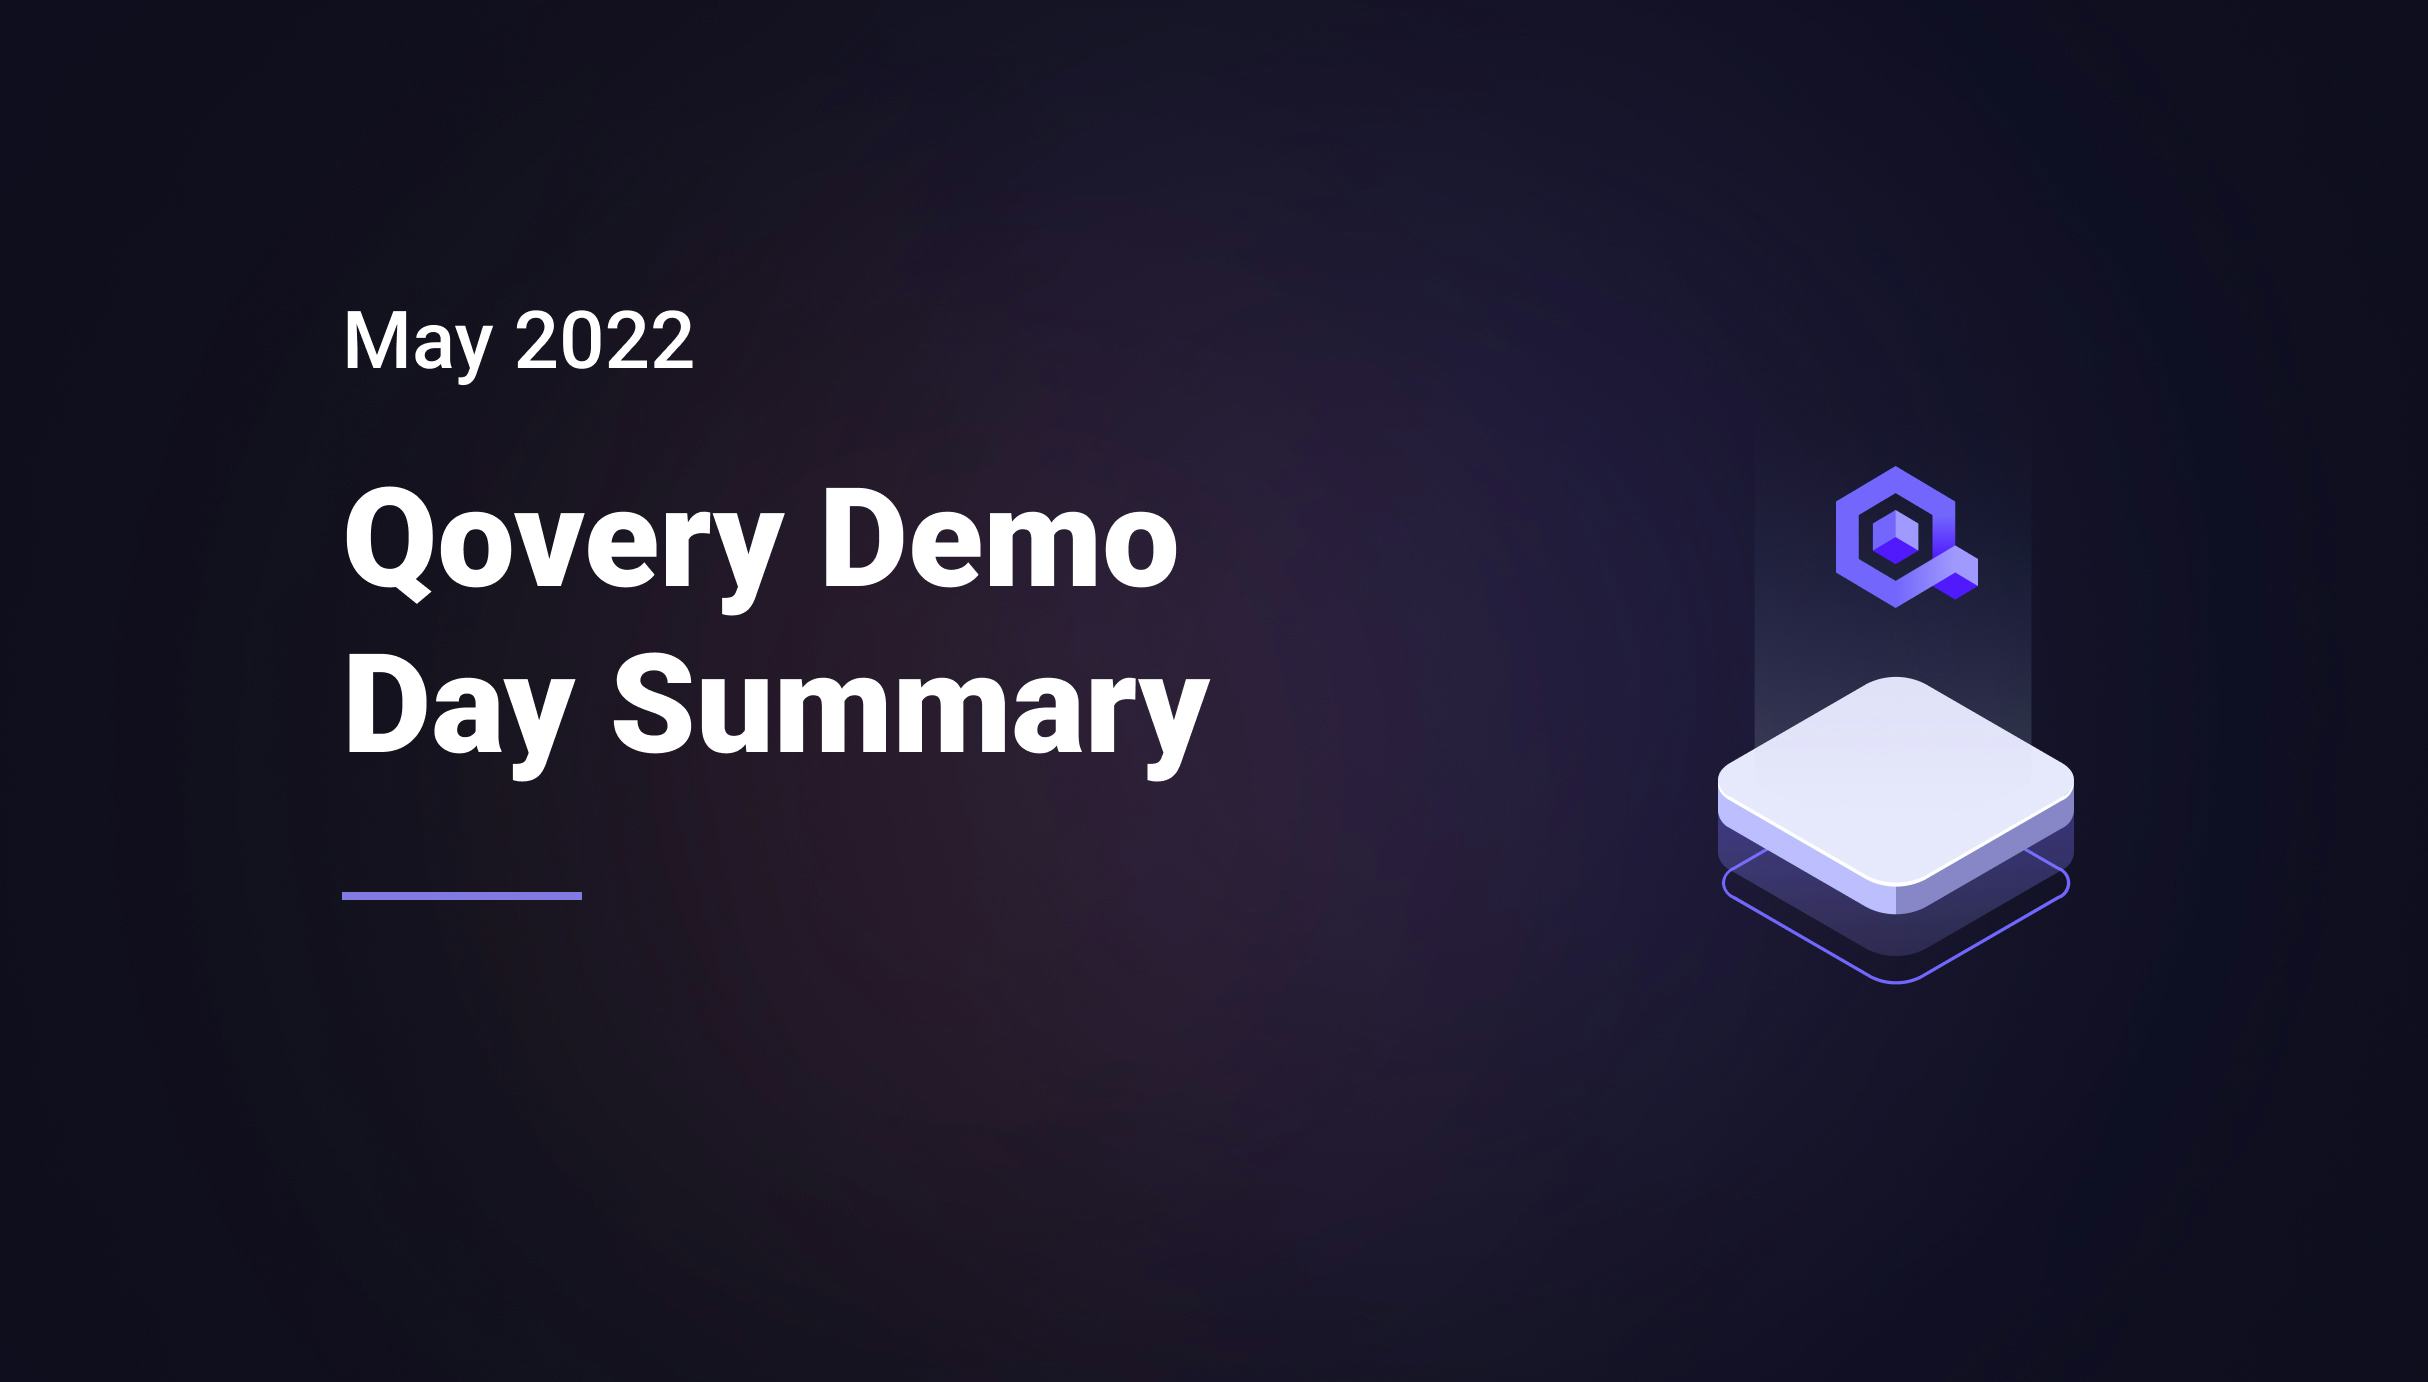 Qovery Demo Day Summary - May 2022